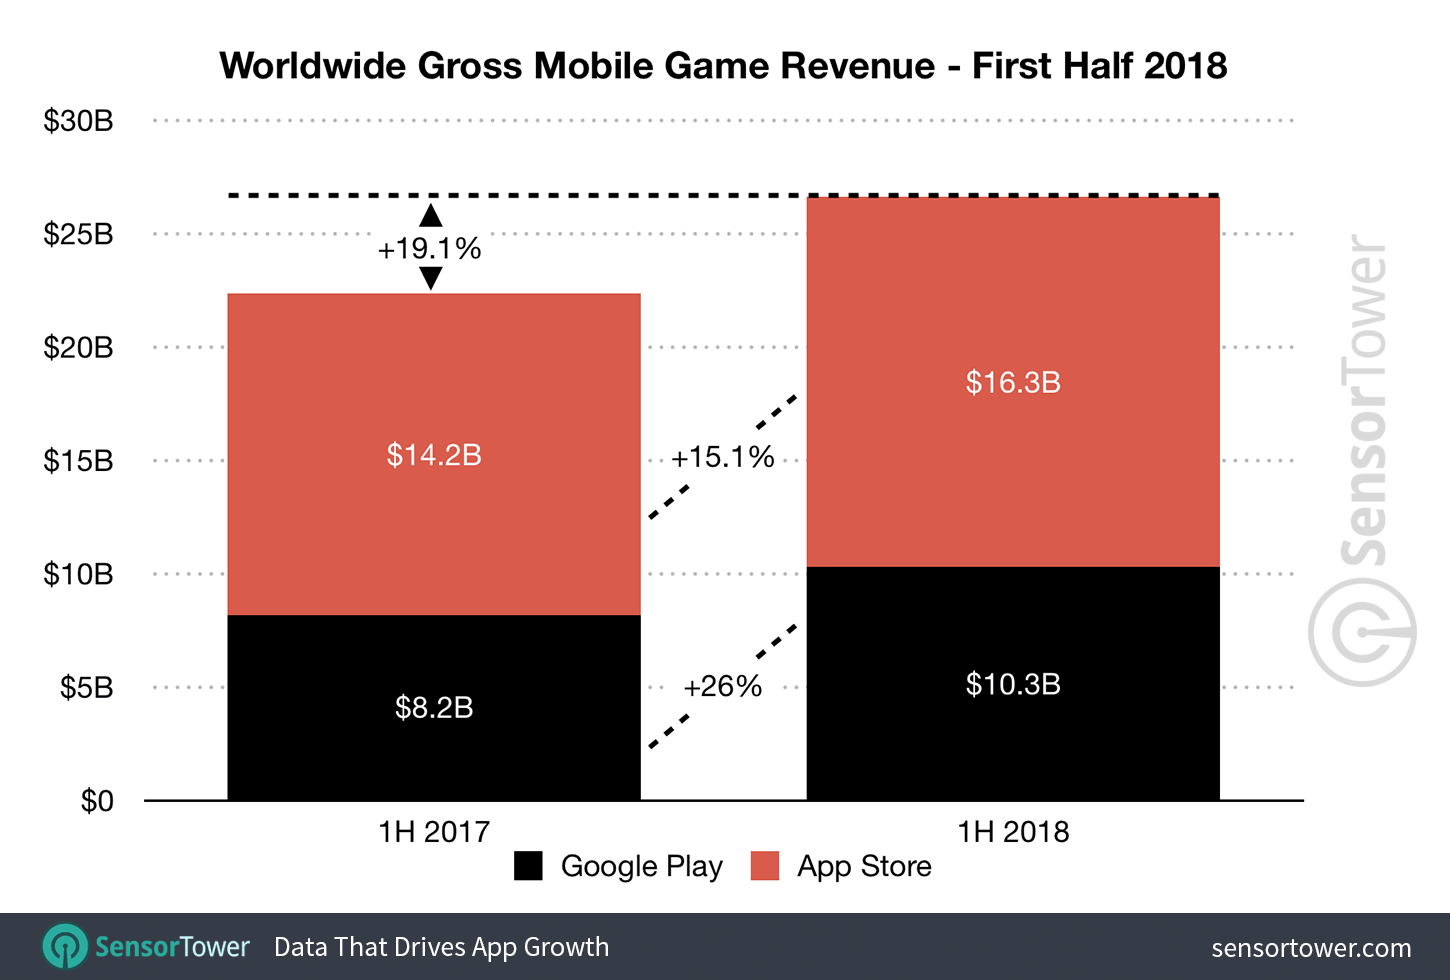 1H 2018 Mobile Game Revenue